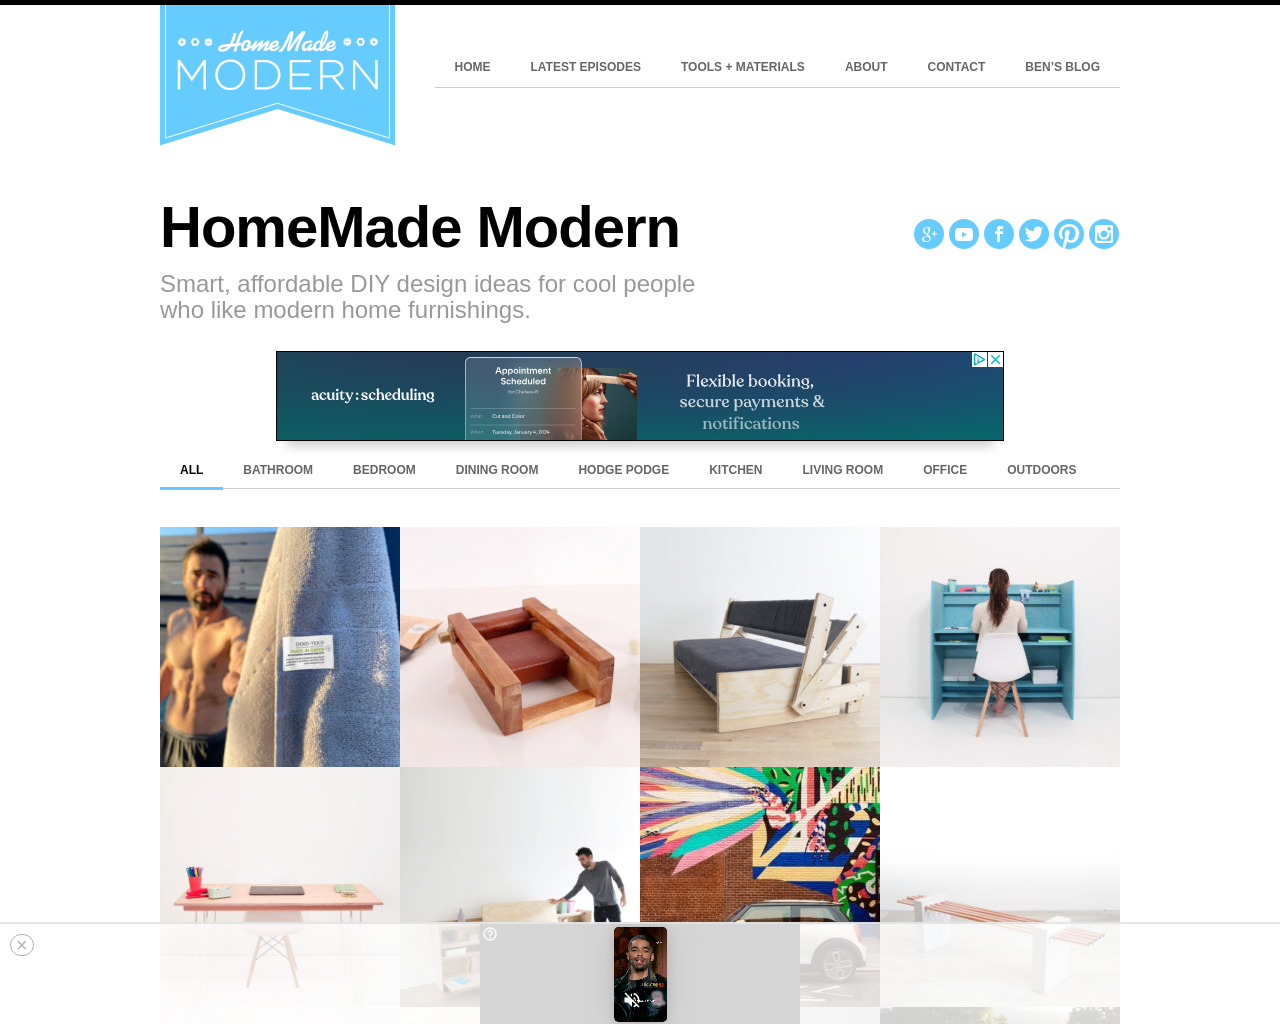 homemade-modern.com